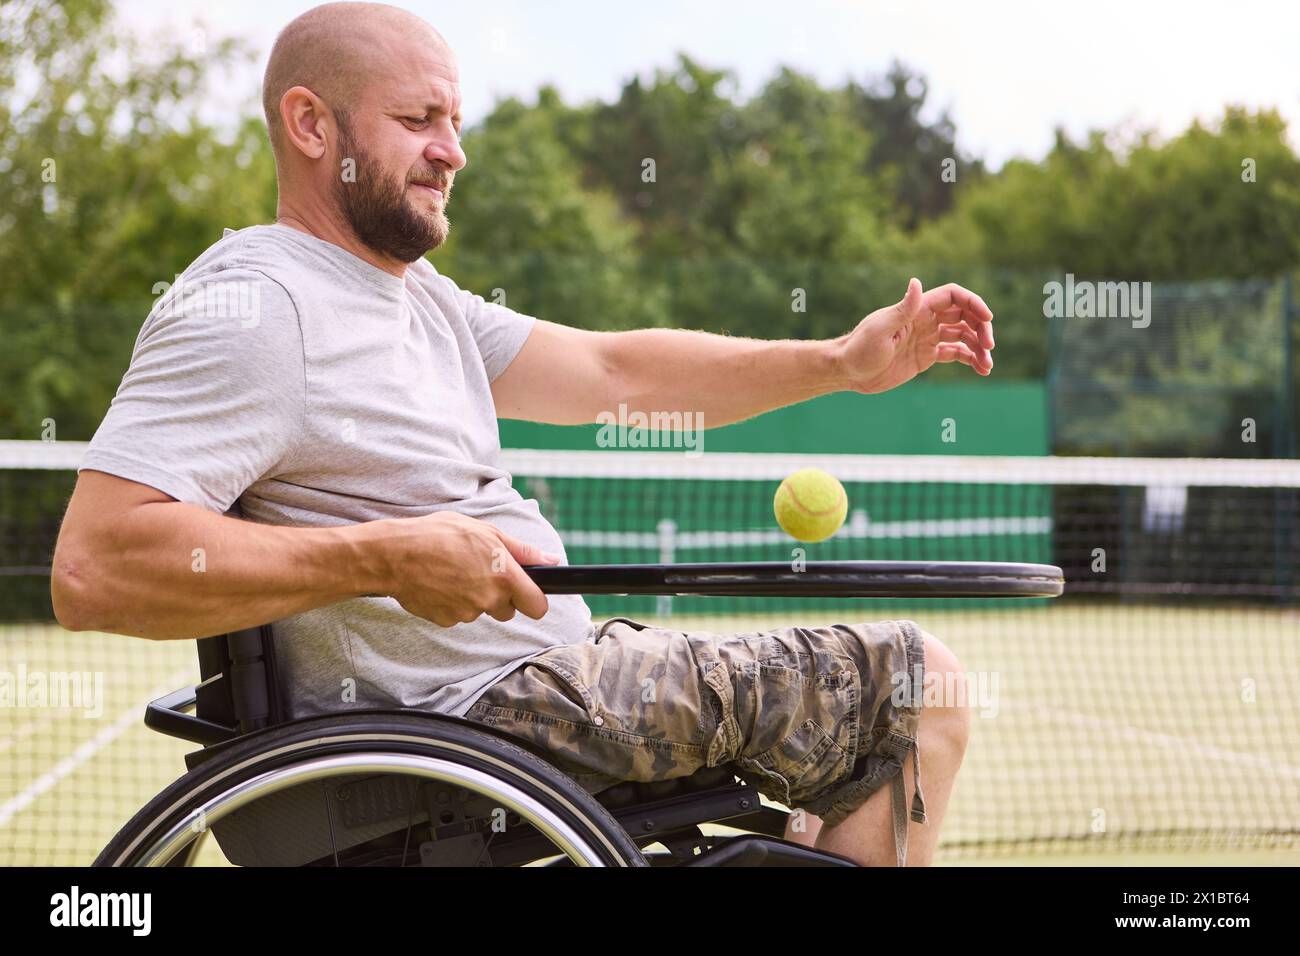 Una persona con disabilità che gioca a tennis su un campo all'aperto, esemplificando determinazione e divertimento negli sport adattivi. Foto Stock